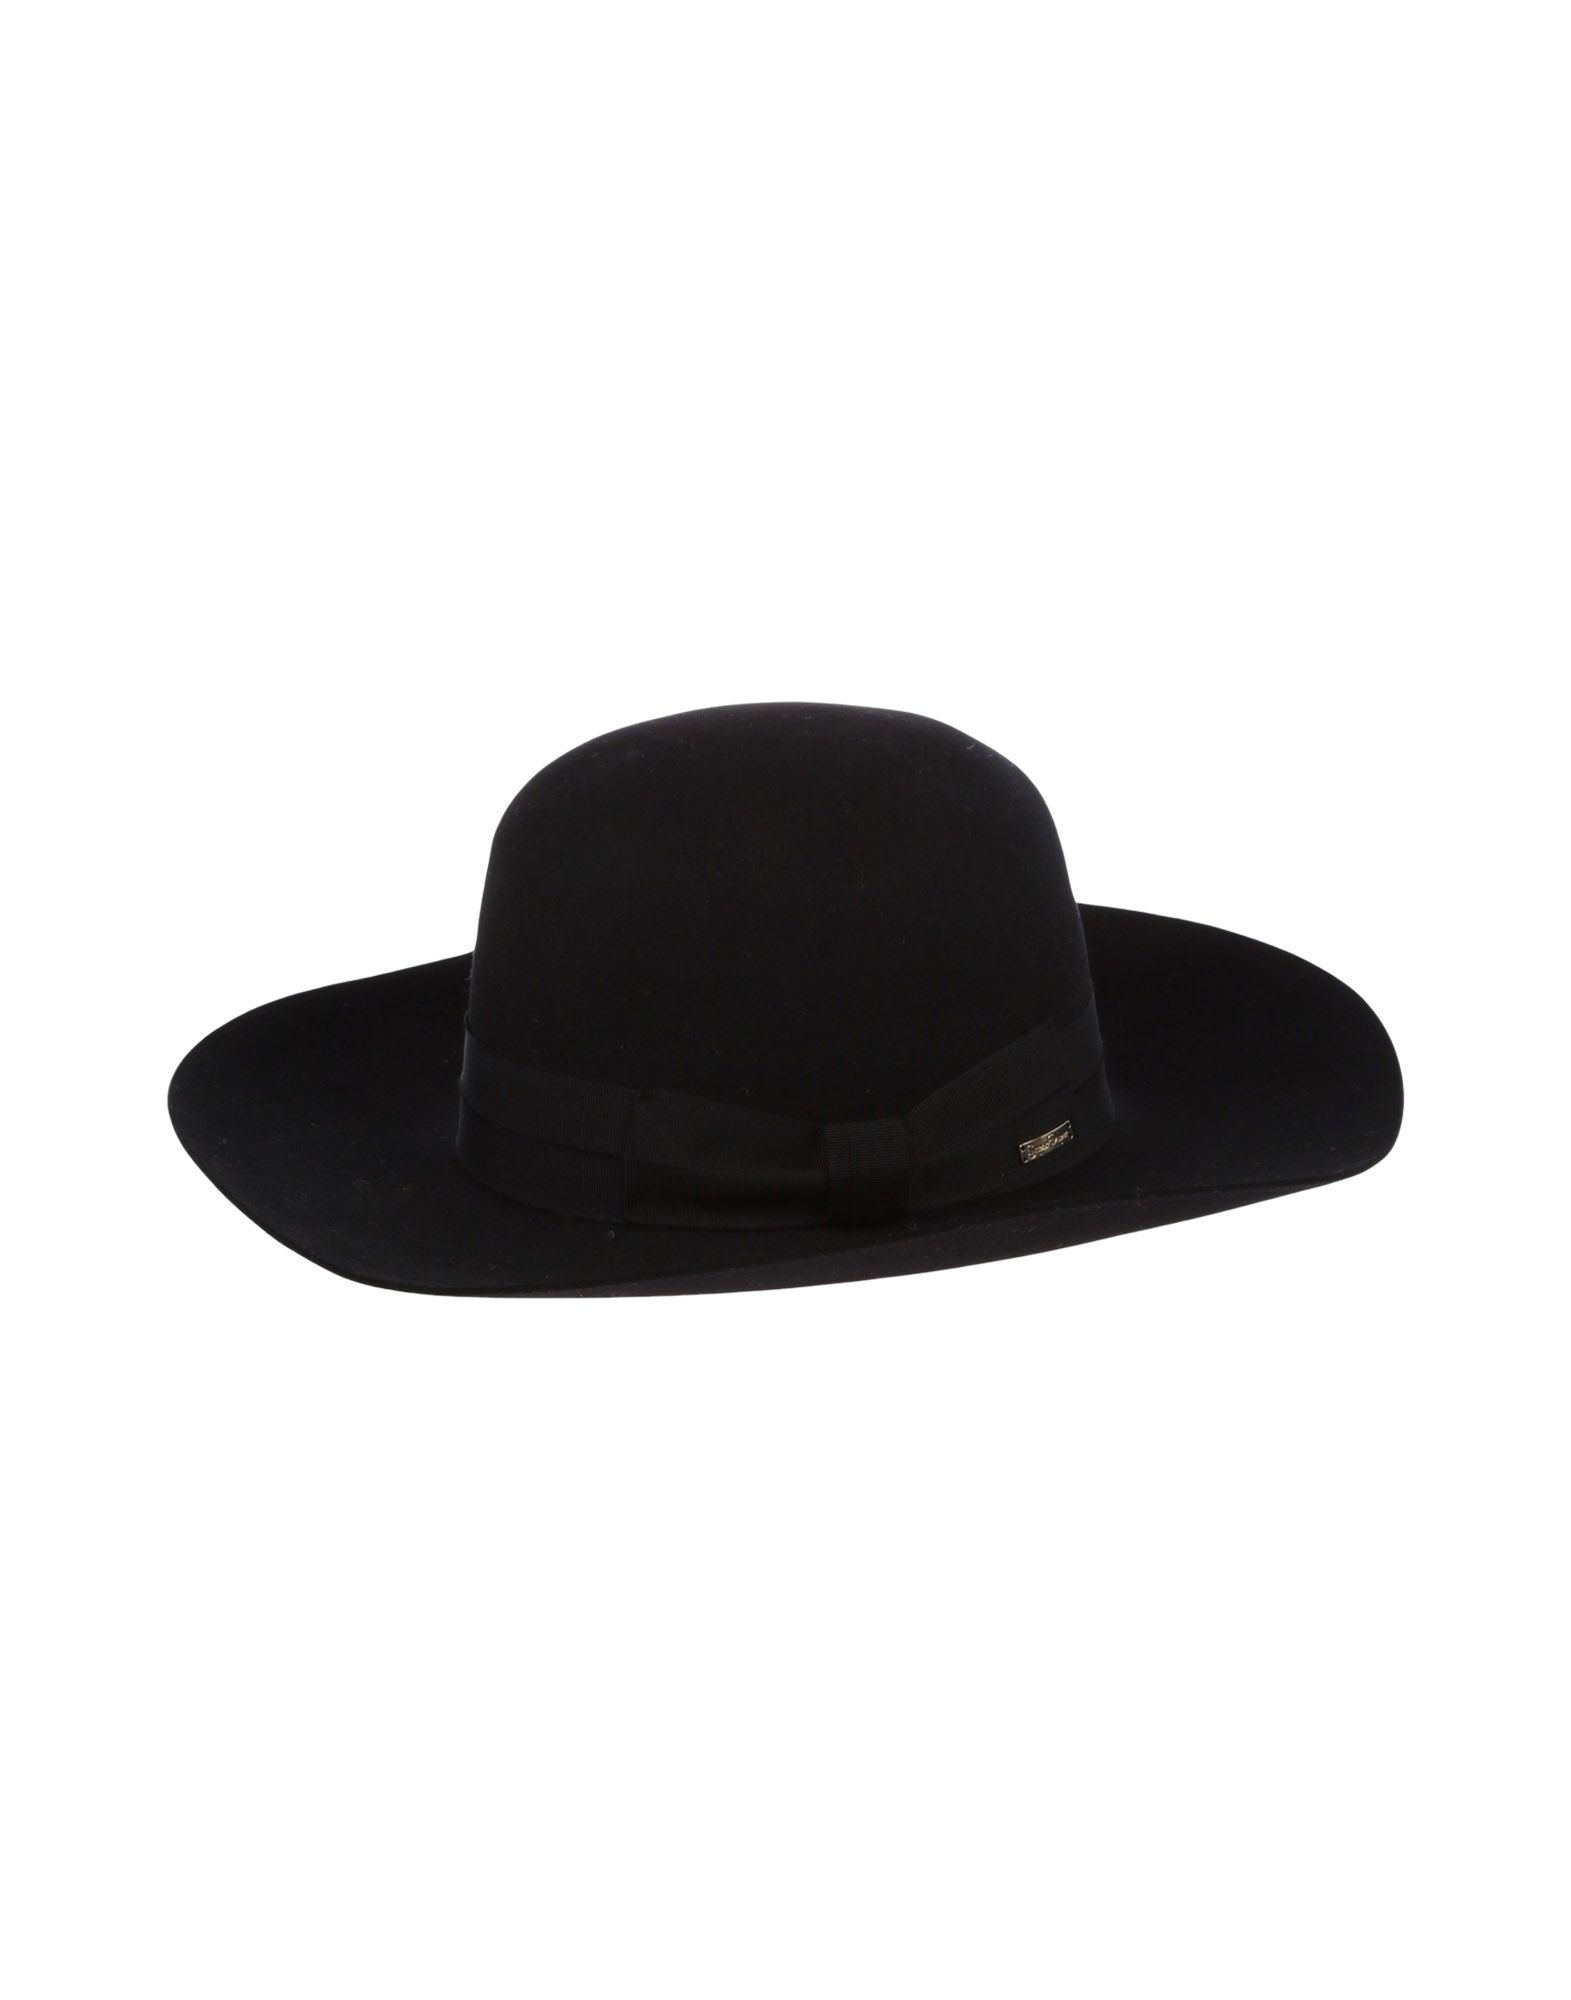 《送料無料》SUPER DUPER HATS レディース 帽子 ブラック 56 紡績繊維